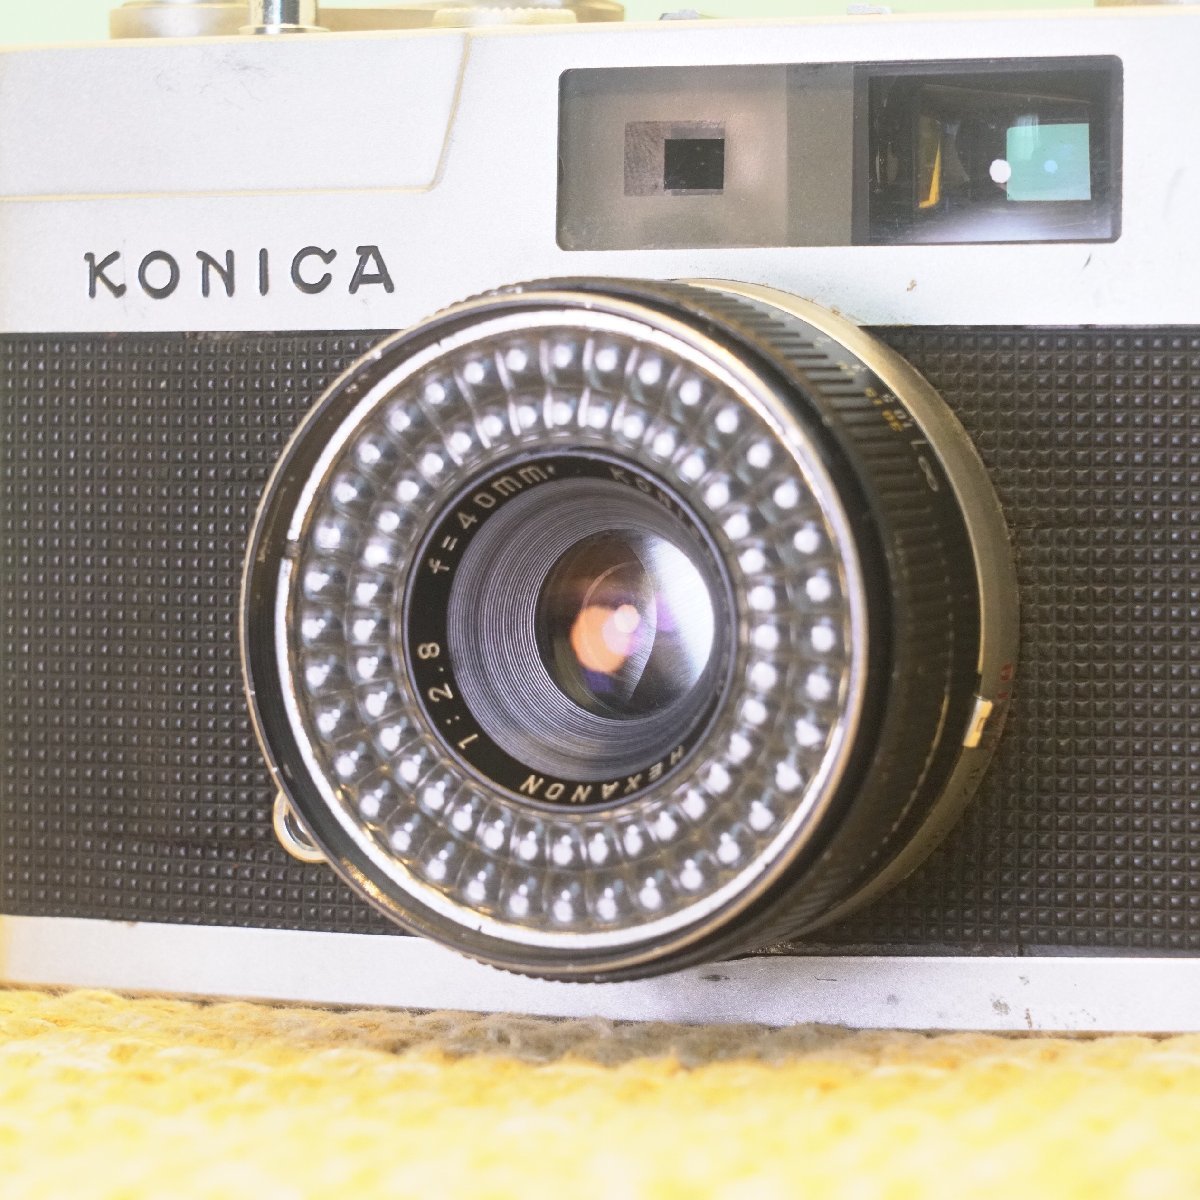 KONICA コニカ EE-MATIC HEXANON 40mm f2.8 フィルムカメラ ジャンク